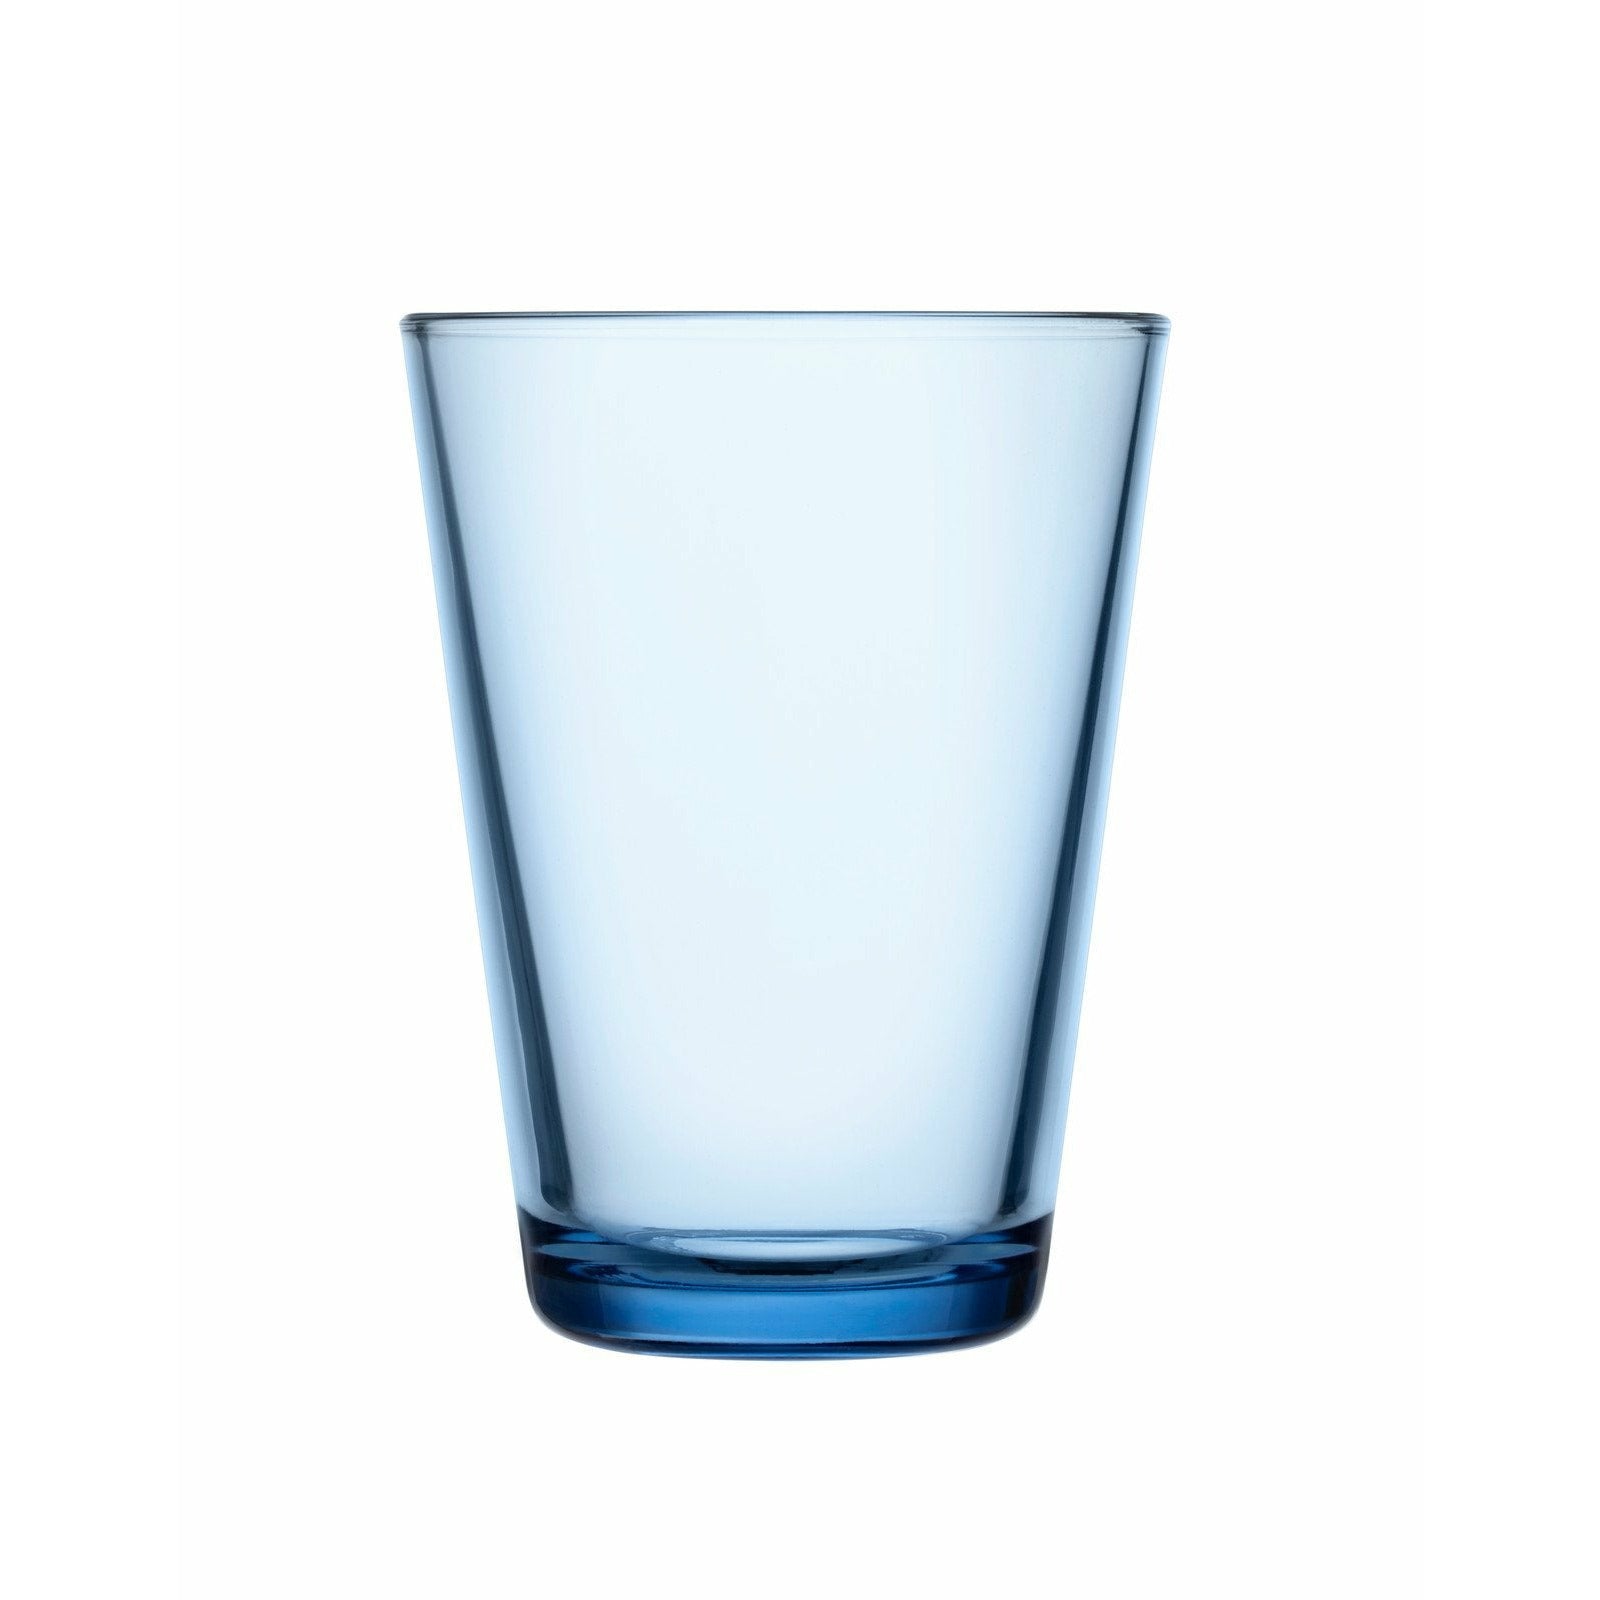 Iittala Katio Drinking Glass Aqua 40cl, 2st.